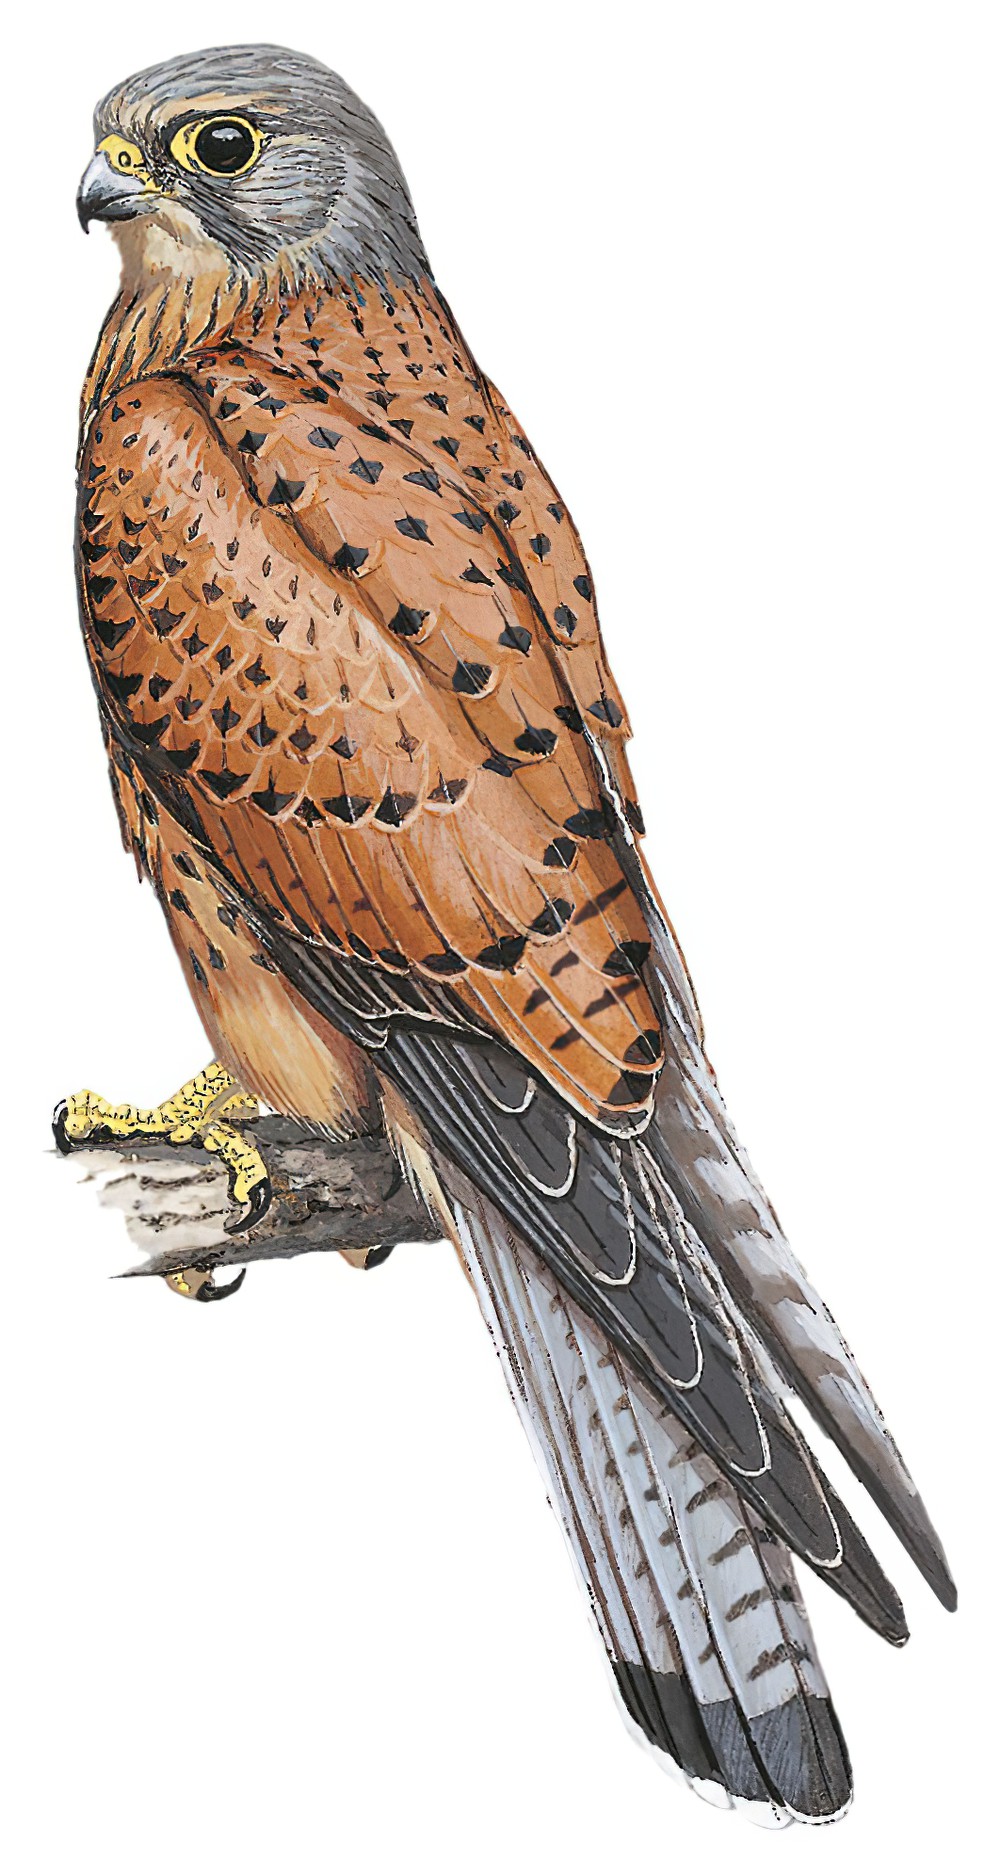 Rock Kestrel / Falco rupicolus